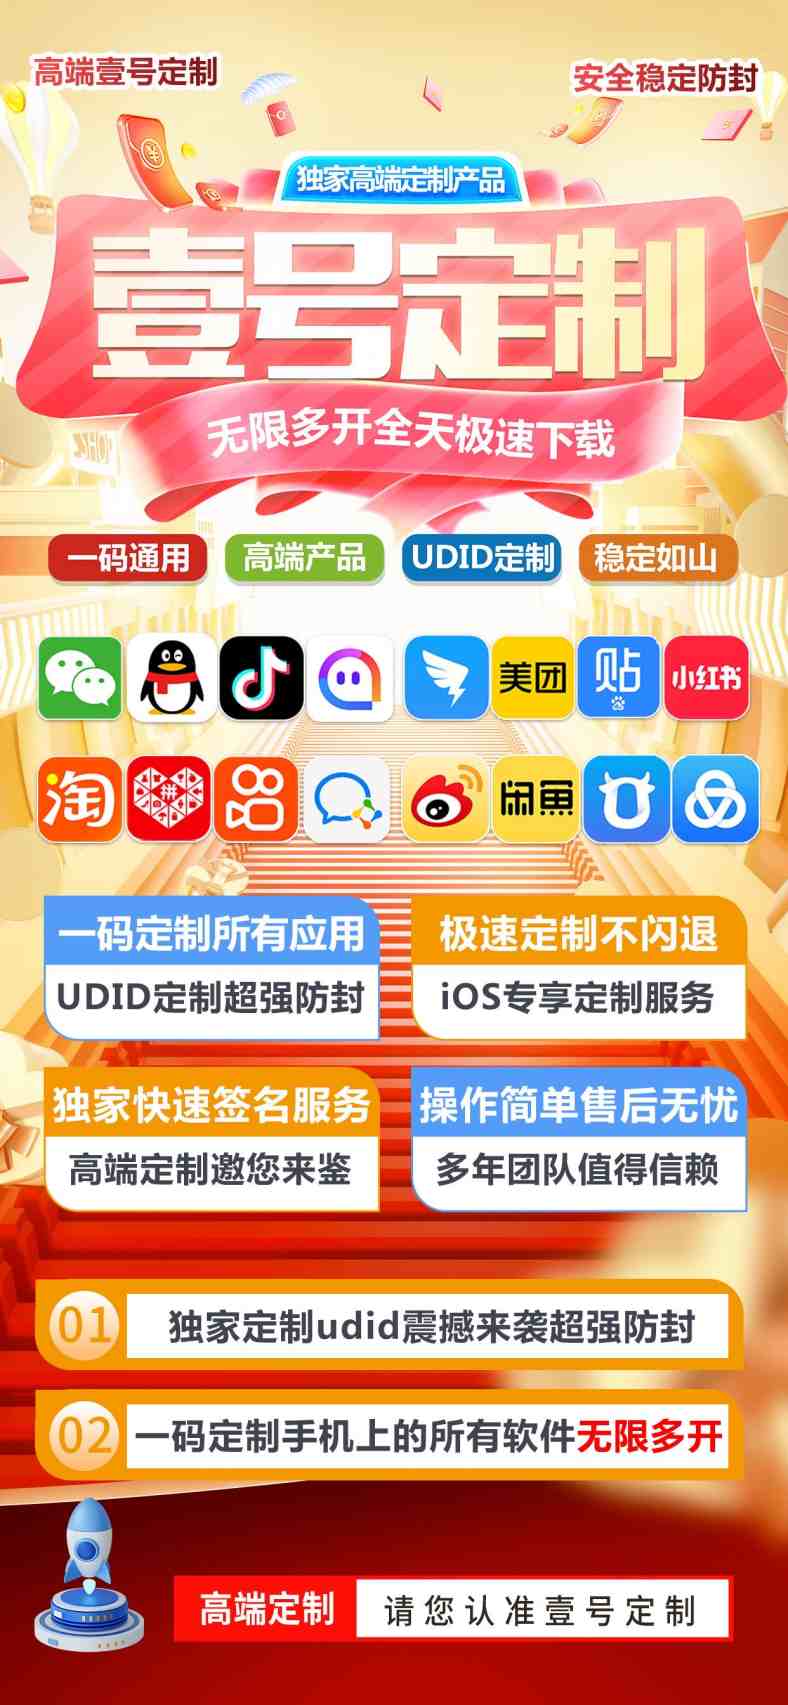 壹号定制-苹果udid定制app-无限多开全天极速下载-裕网云资源库